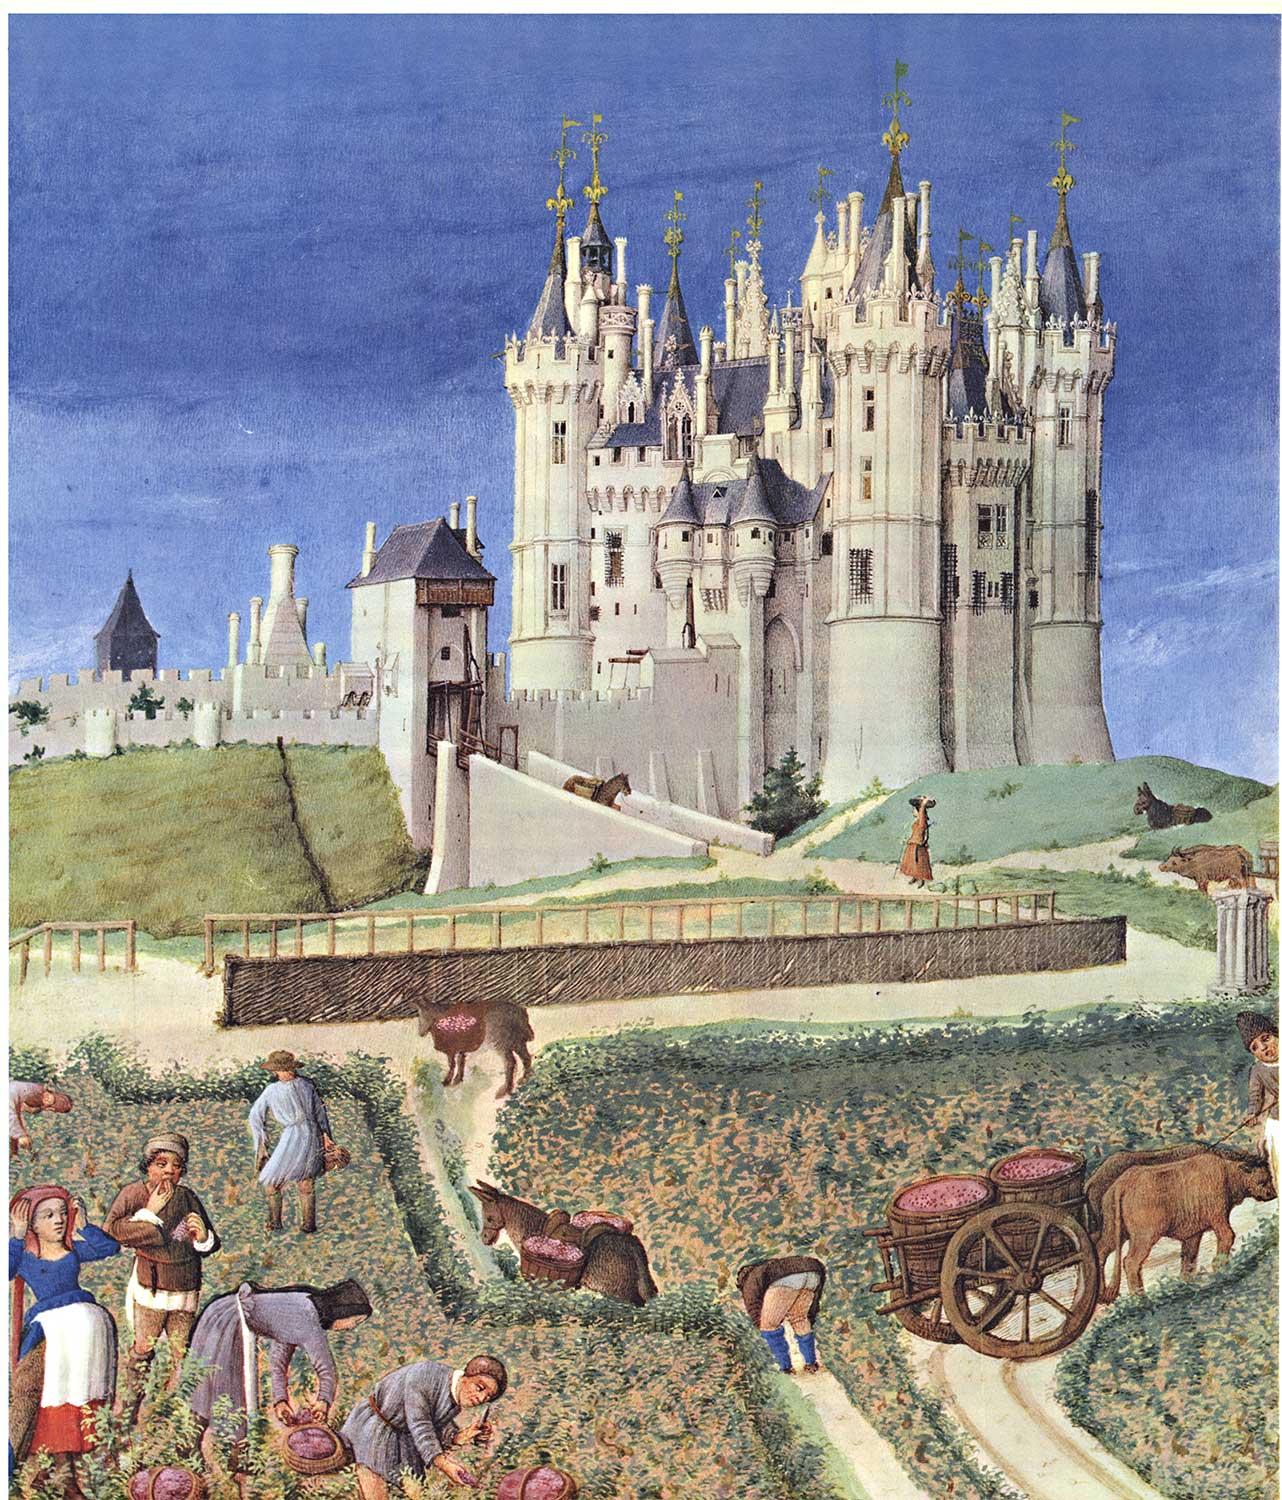 Original 'France Chateaux de la Loire  Saumur - Anjou' vintage travel poster - Print by Jacques Dubois